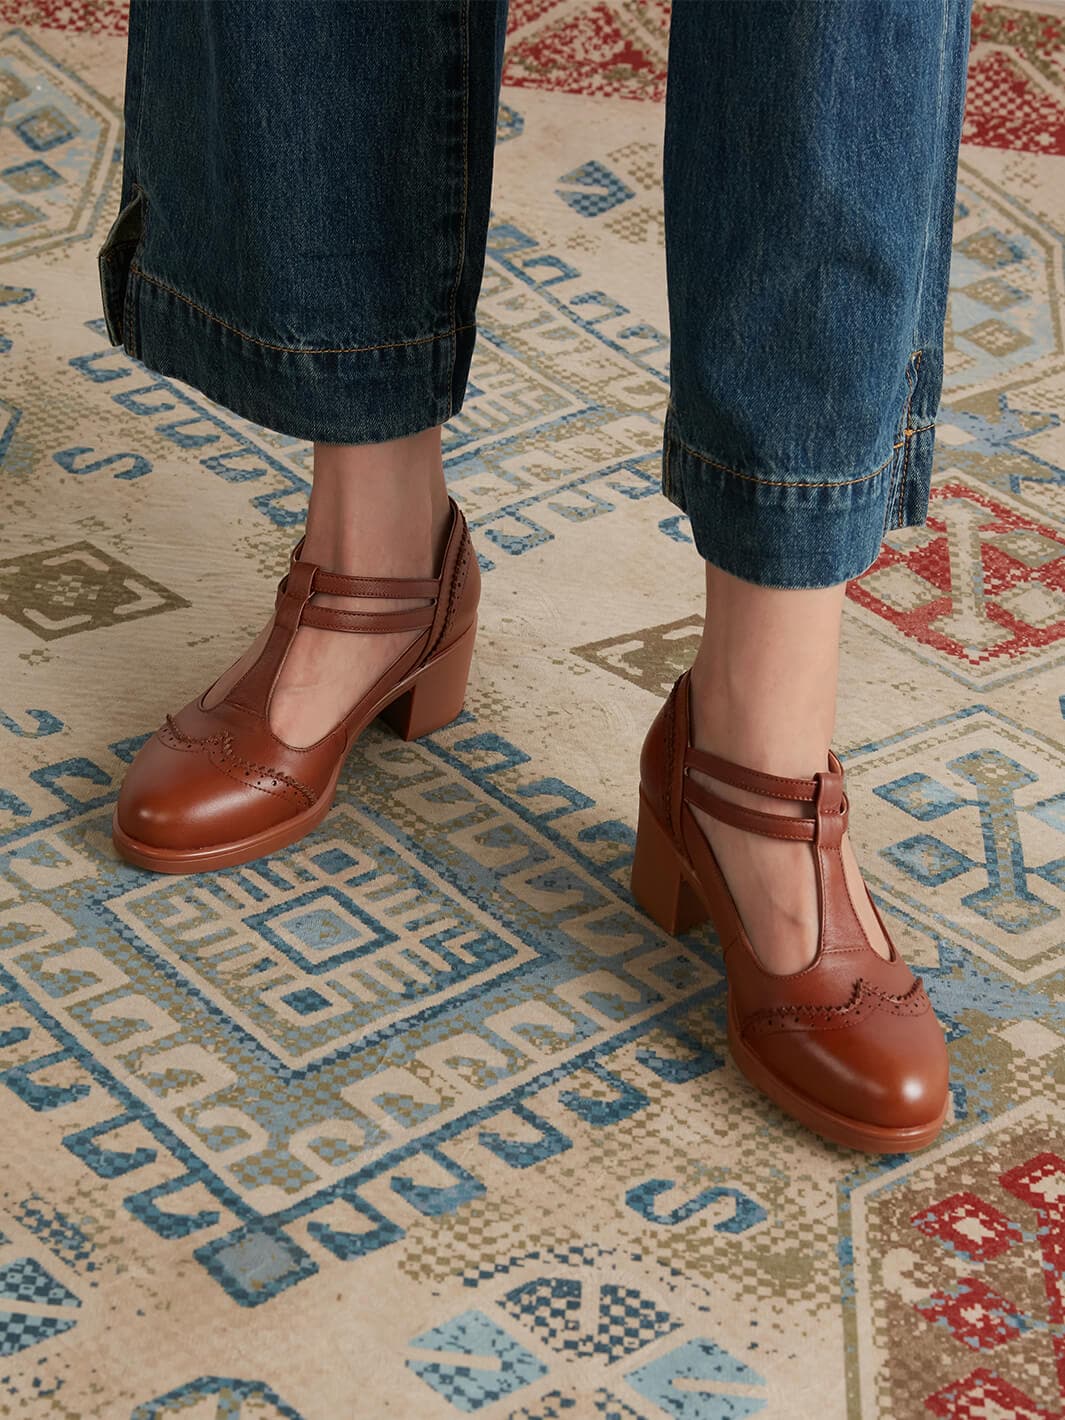 Vintage Leather Shoes for Women - Handmade & Stylish– Ecosusi